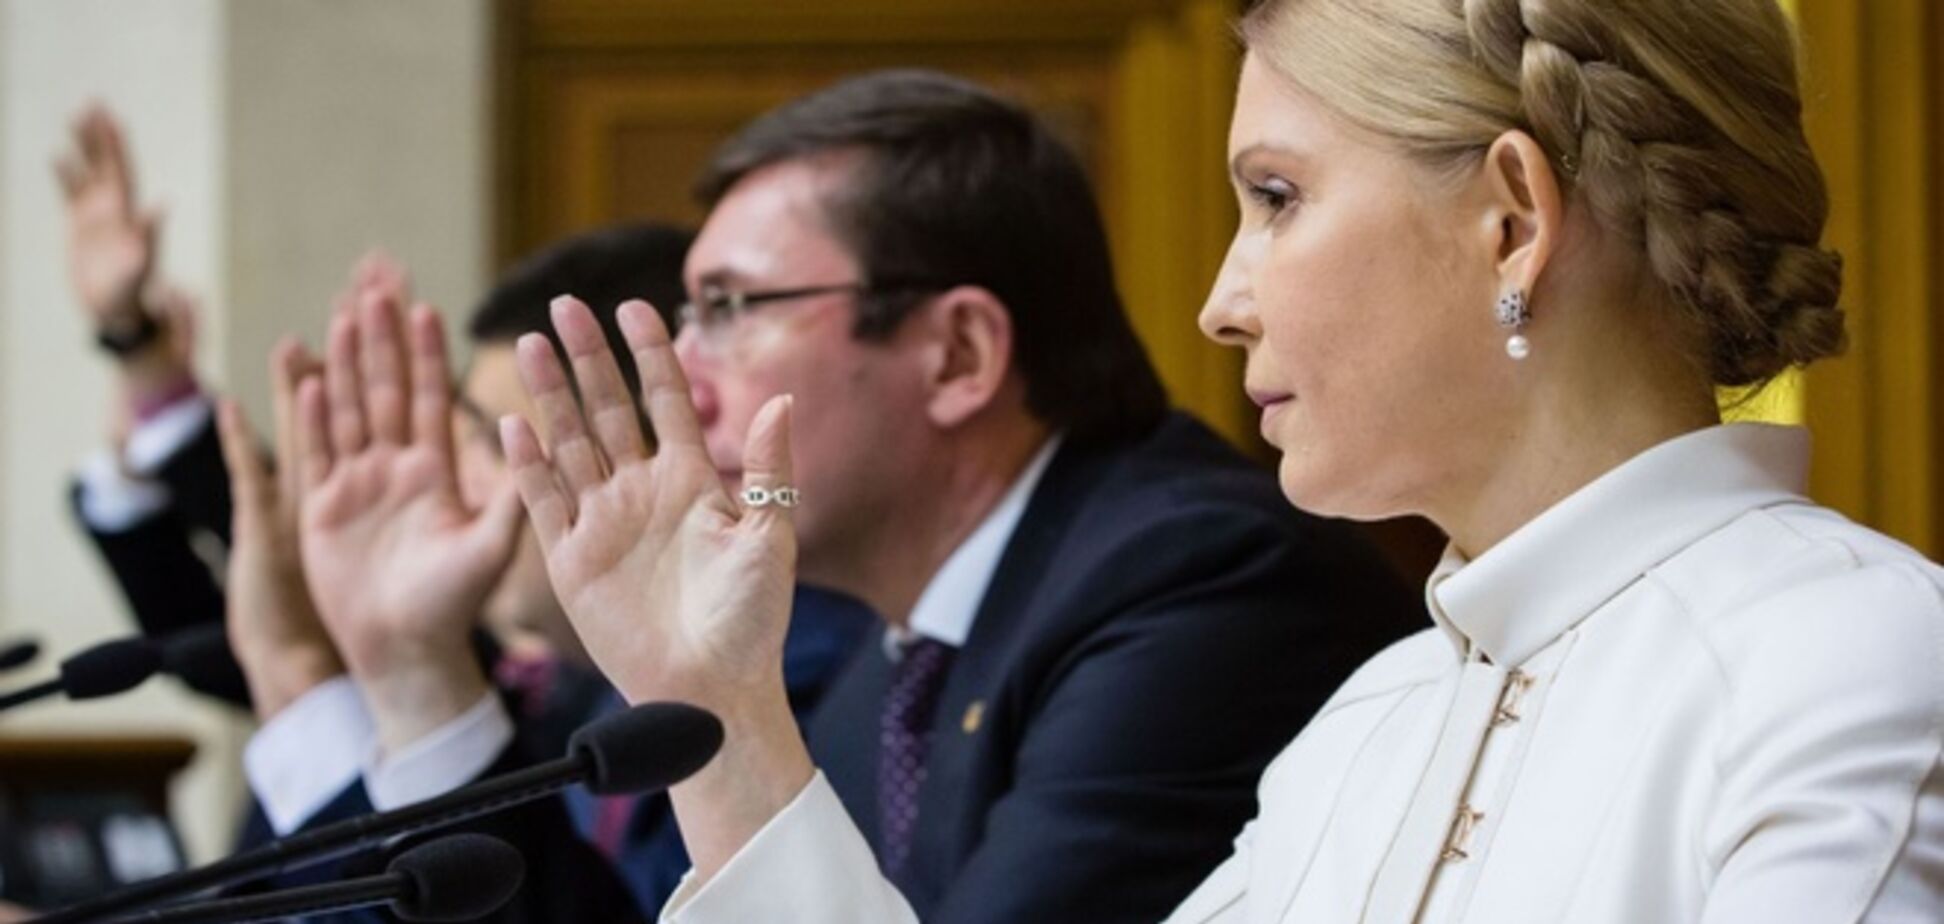 Переговоры застопорились на комитетах и на кандидатуре в Кабмин от Тимошенко - СМИ